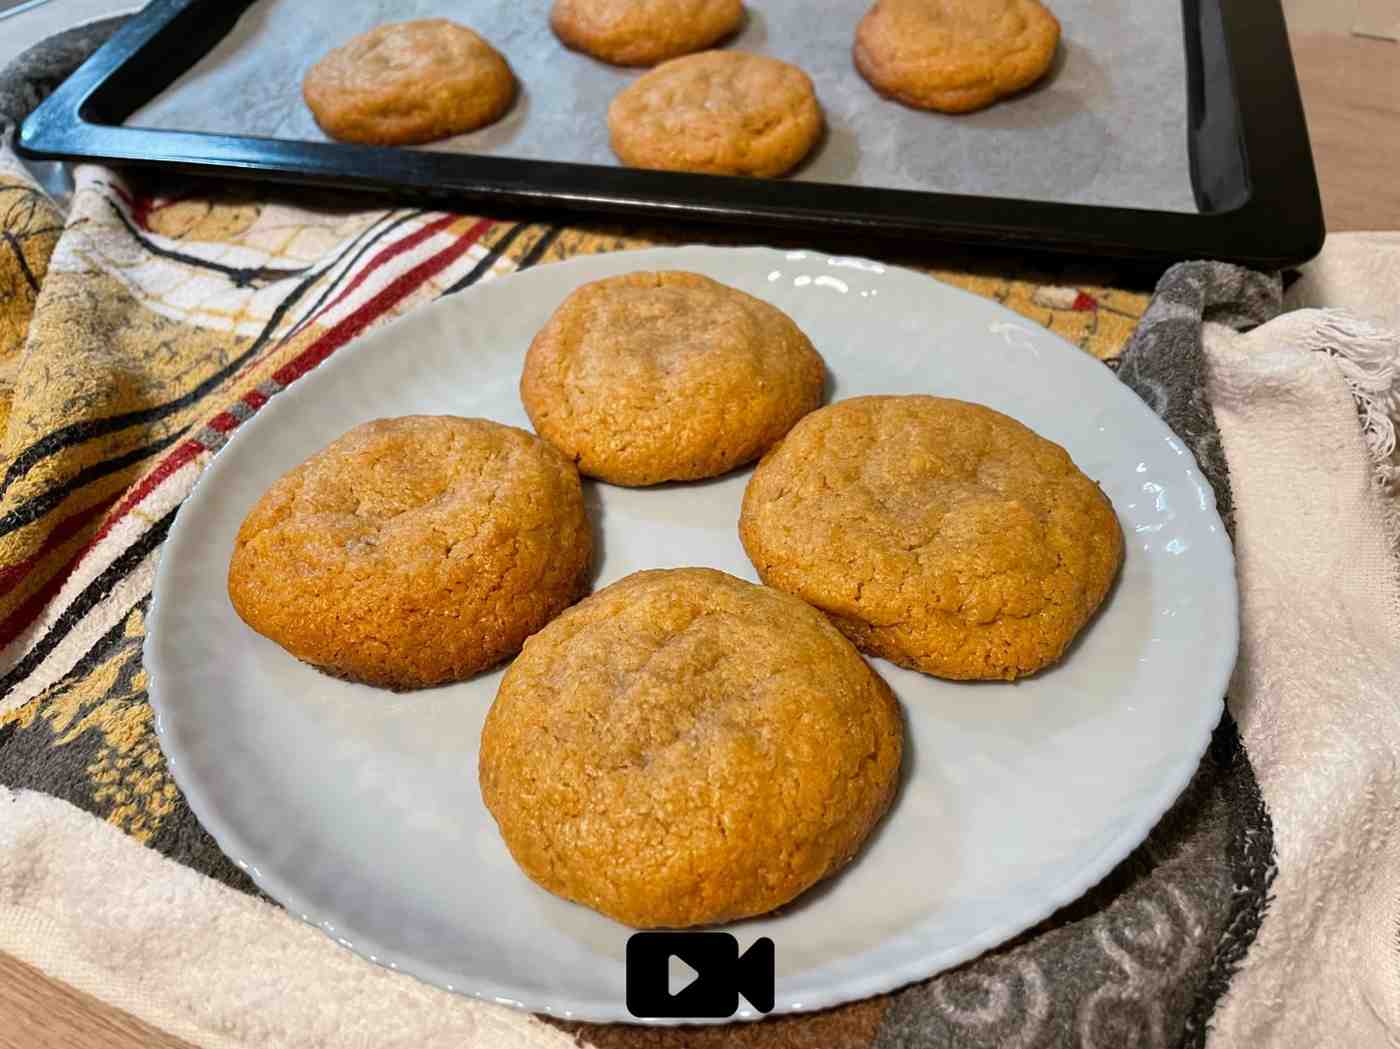 Συνταγή για μπισκότα με φυστικοβούτυρο. Φτιάχνονται με μόλις 4 υλικά. Γίνονται γρήγορα και έχουν υπέροχη γεύση!